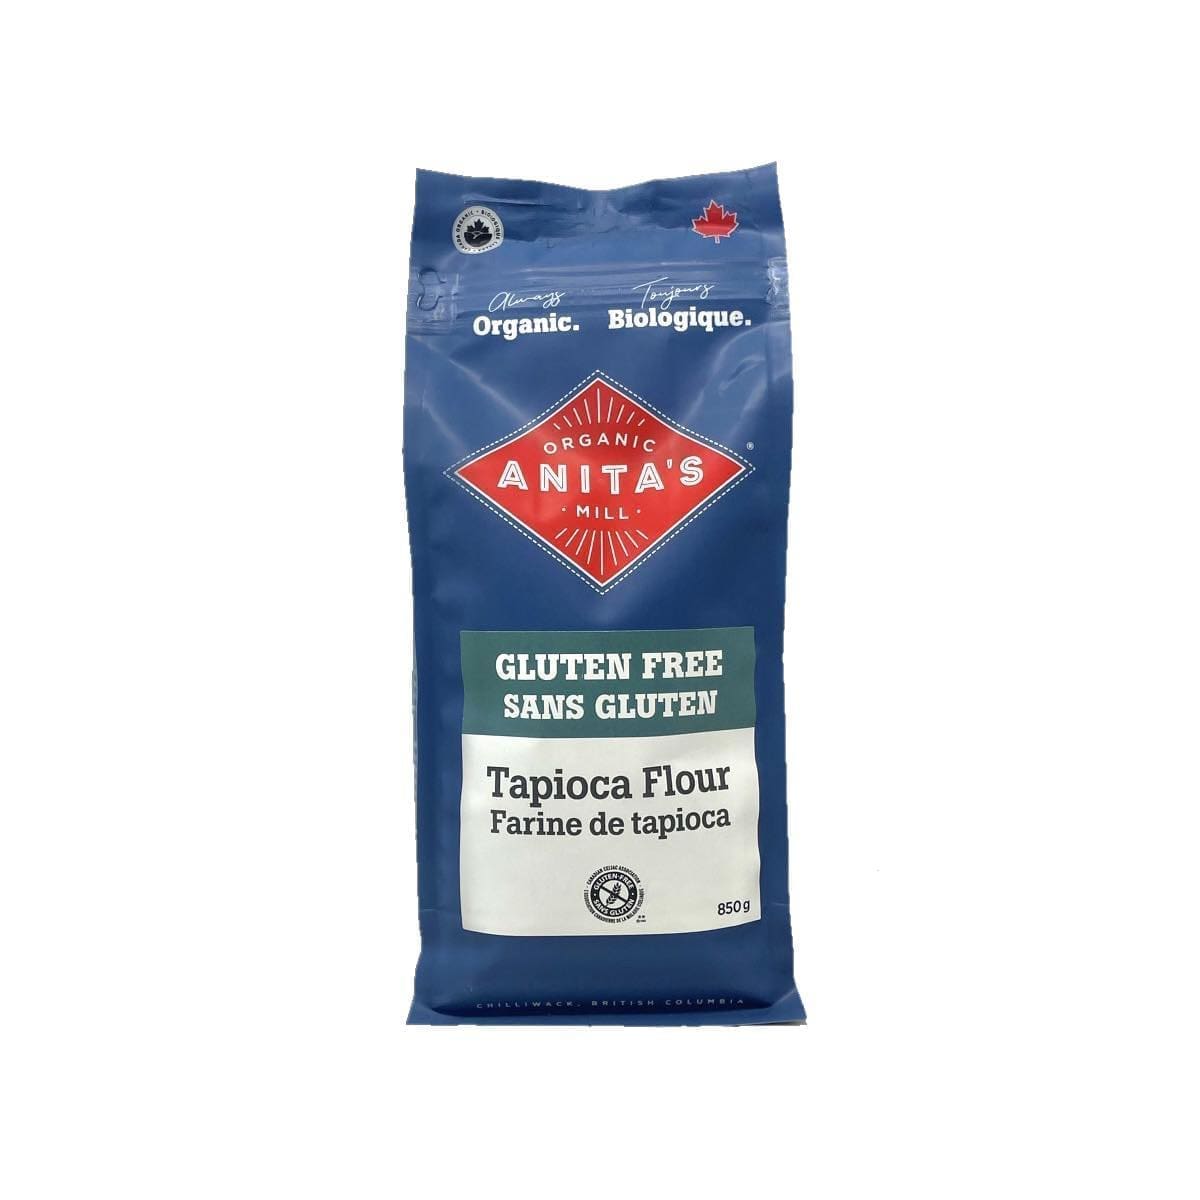 Anita’s Gluten Free Tapioca Flour (850g)